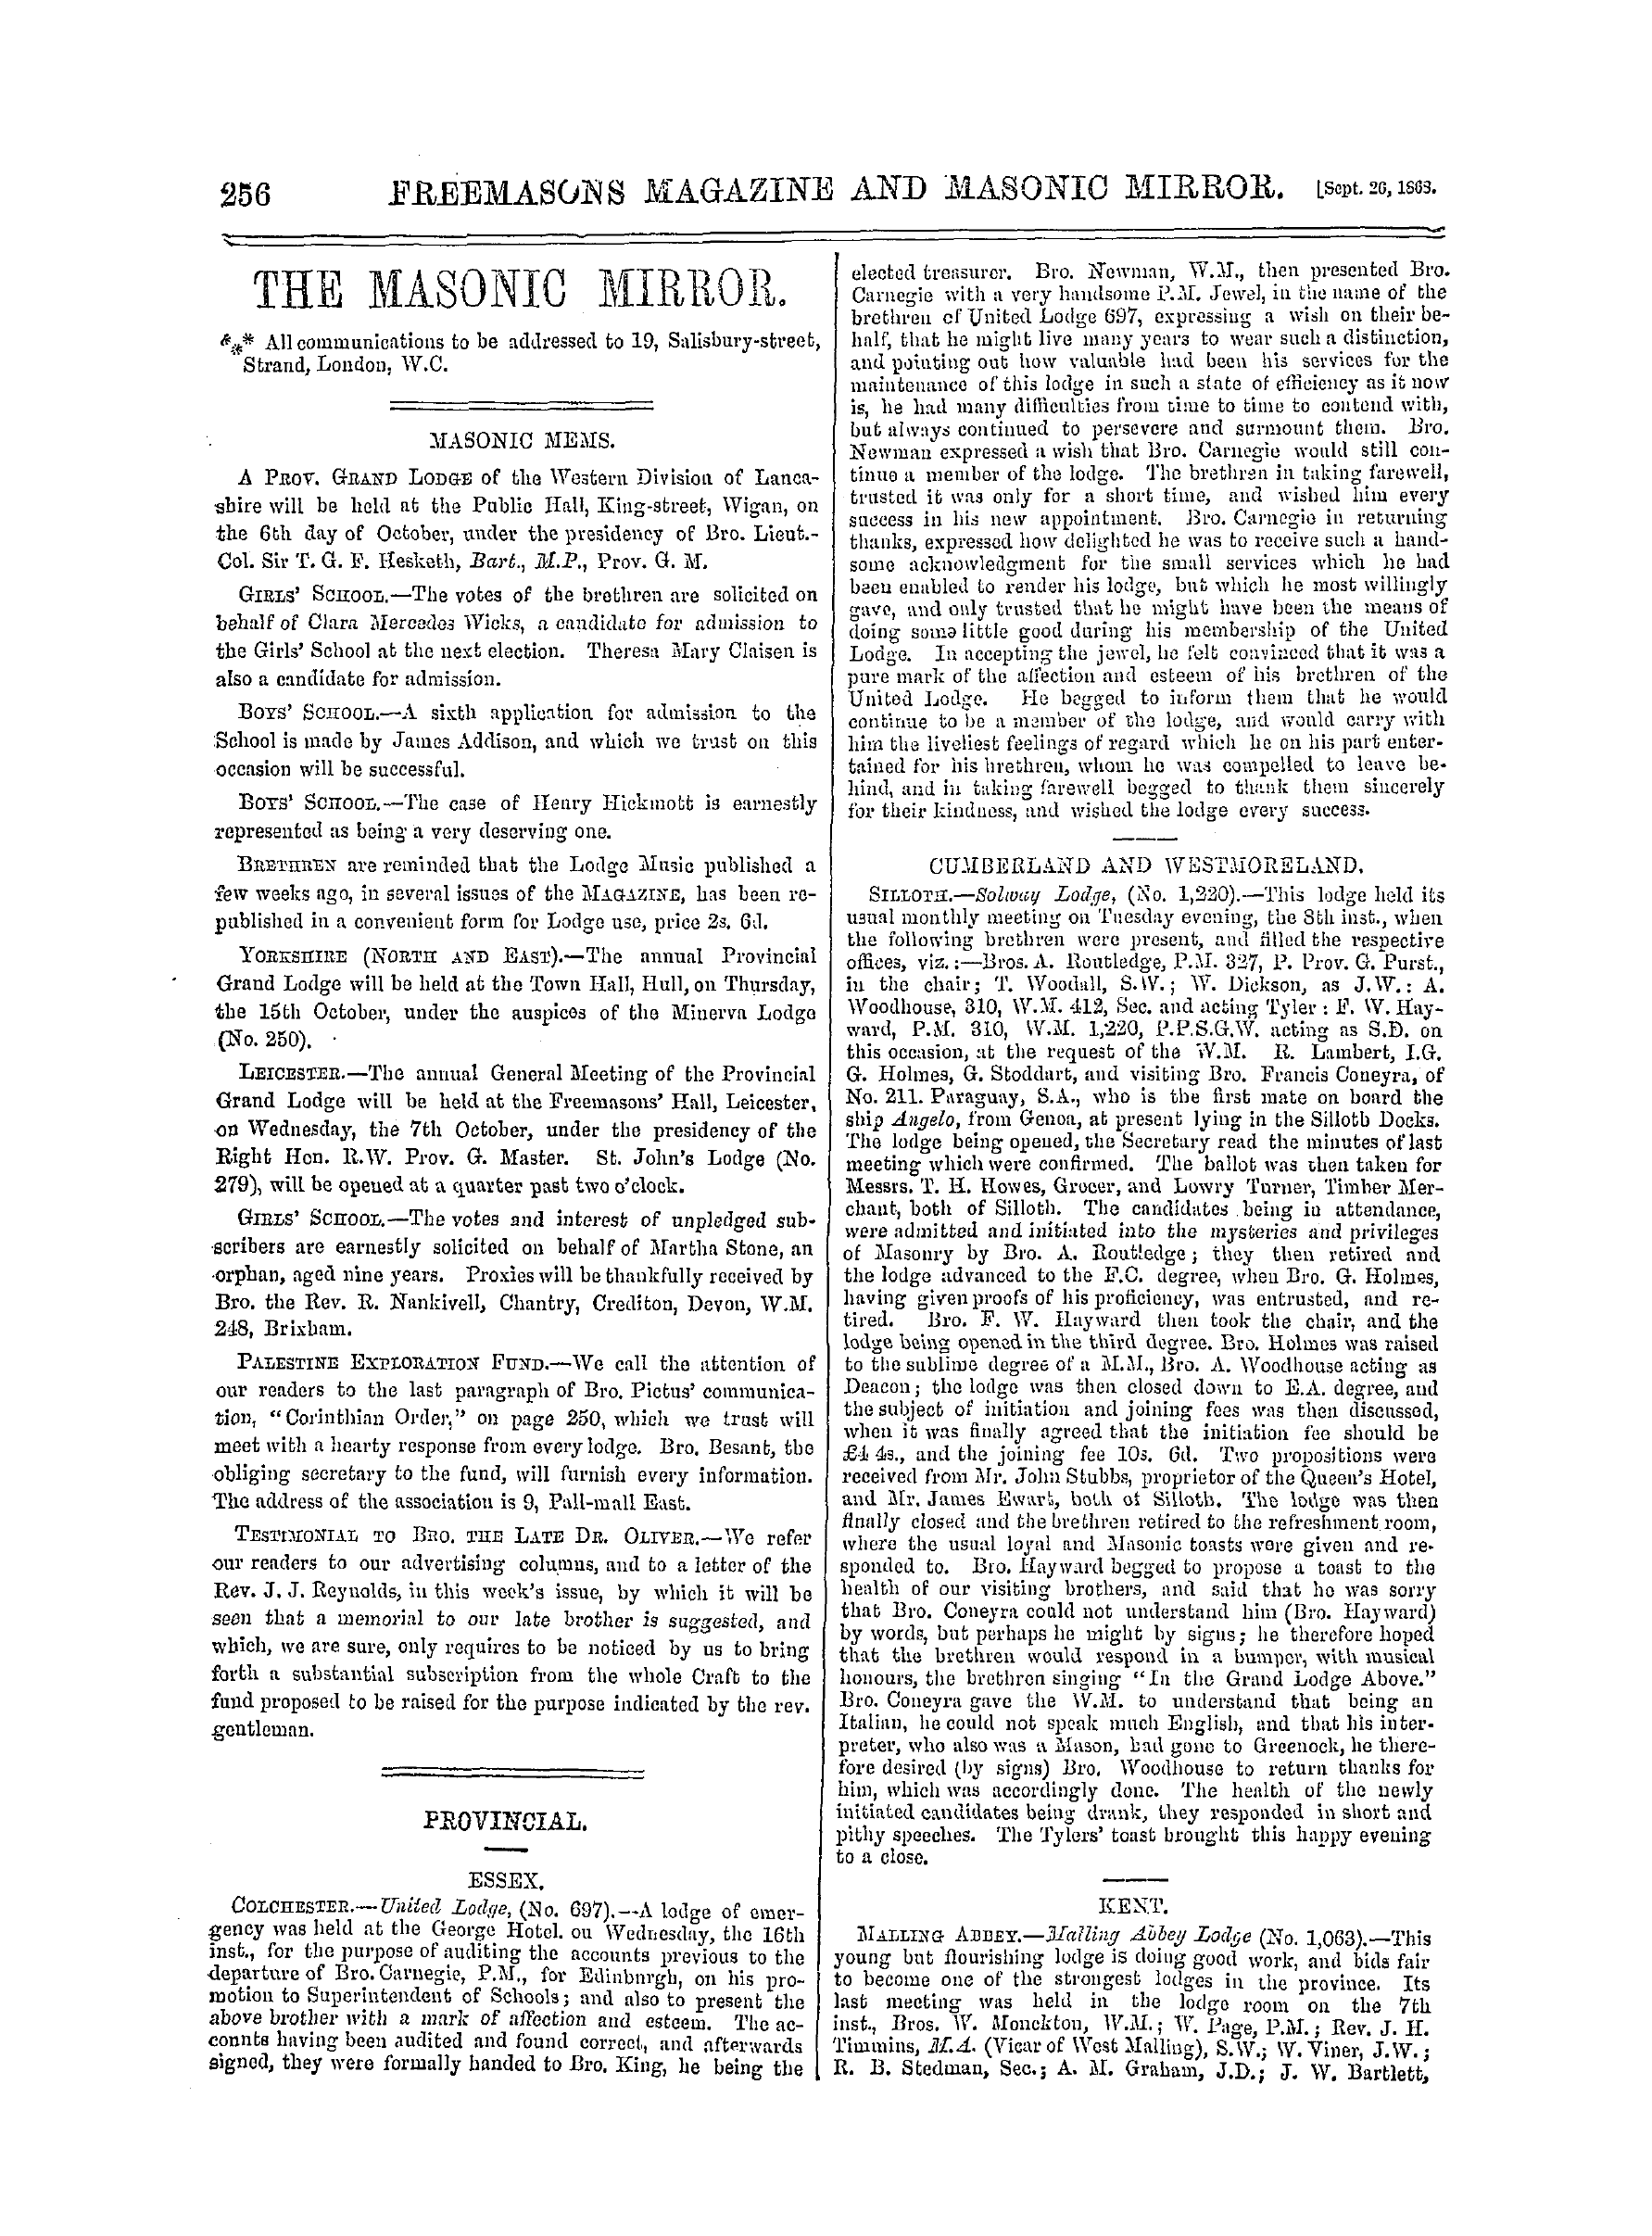 The Freemasons' Monthly Magazine: 1868-09-26: 16